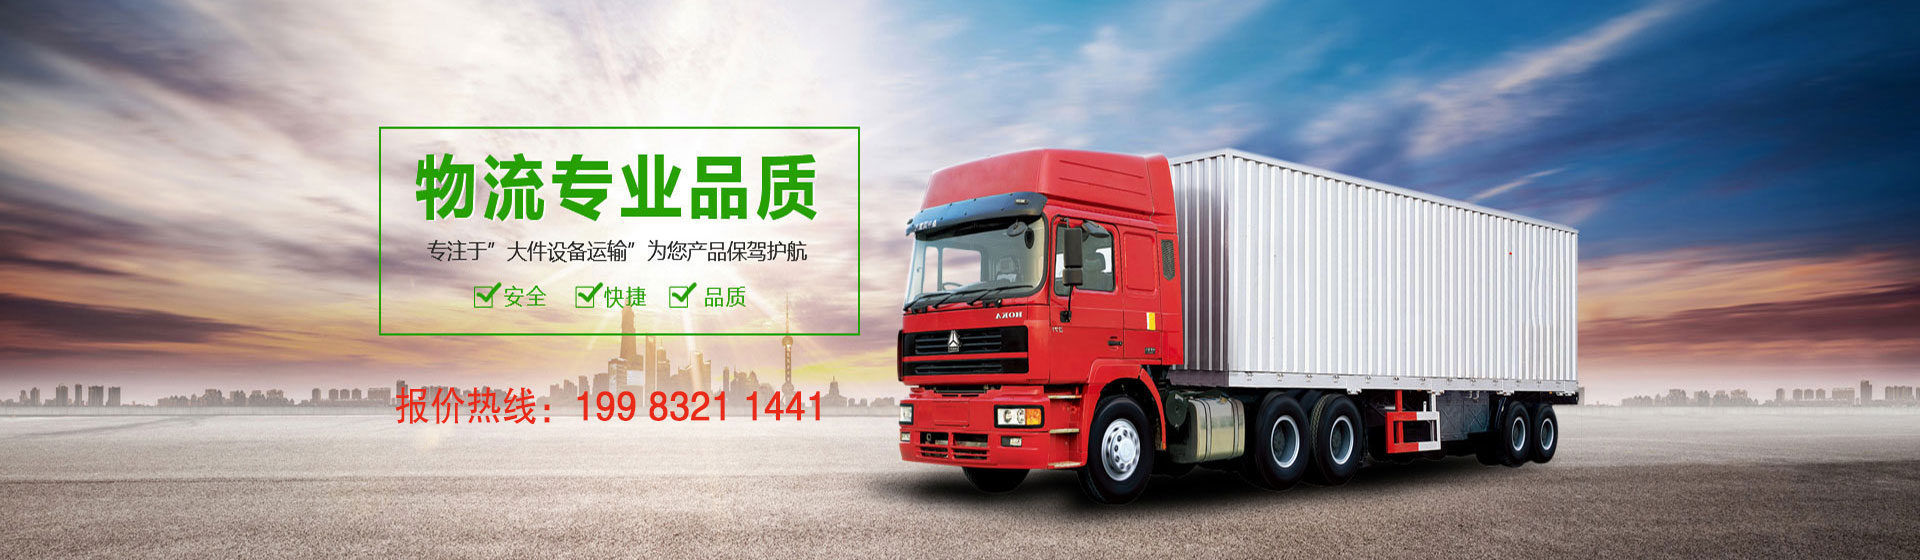 重庆（巫山）直达乐至安岳县的4.2米,6.8米,9.6米,13米,17.5米回程货车快捷方便价格便宜